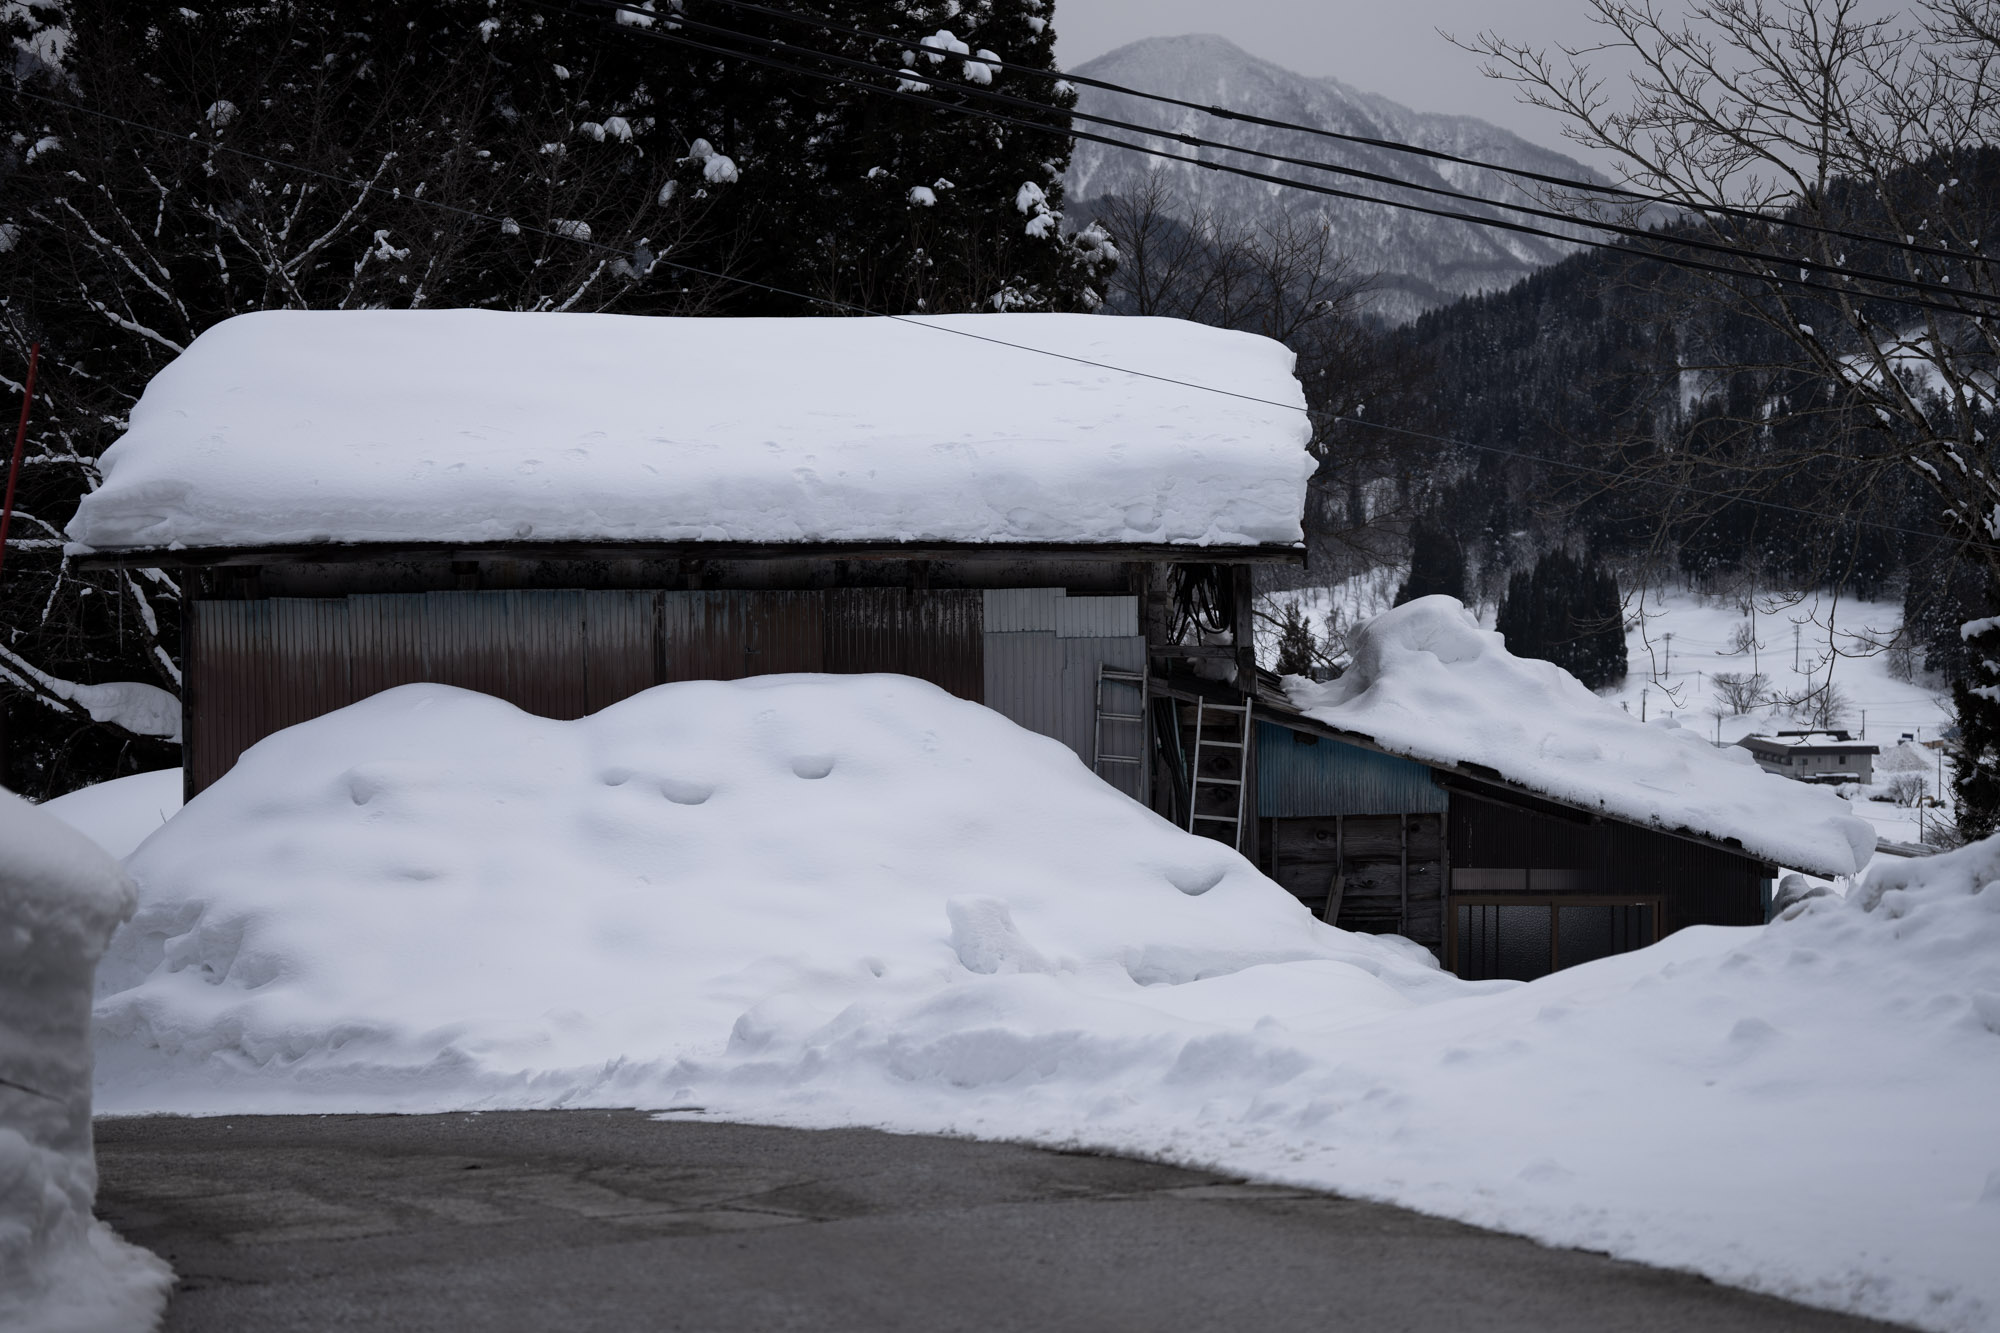 2月2日。今年の雪のピークは2月終わり頃。屋根の上に2m以上積もりました。